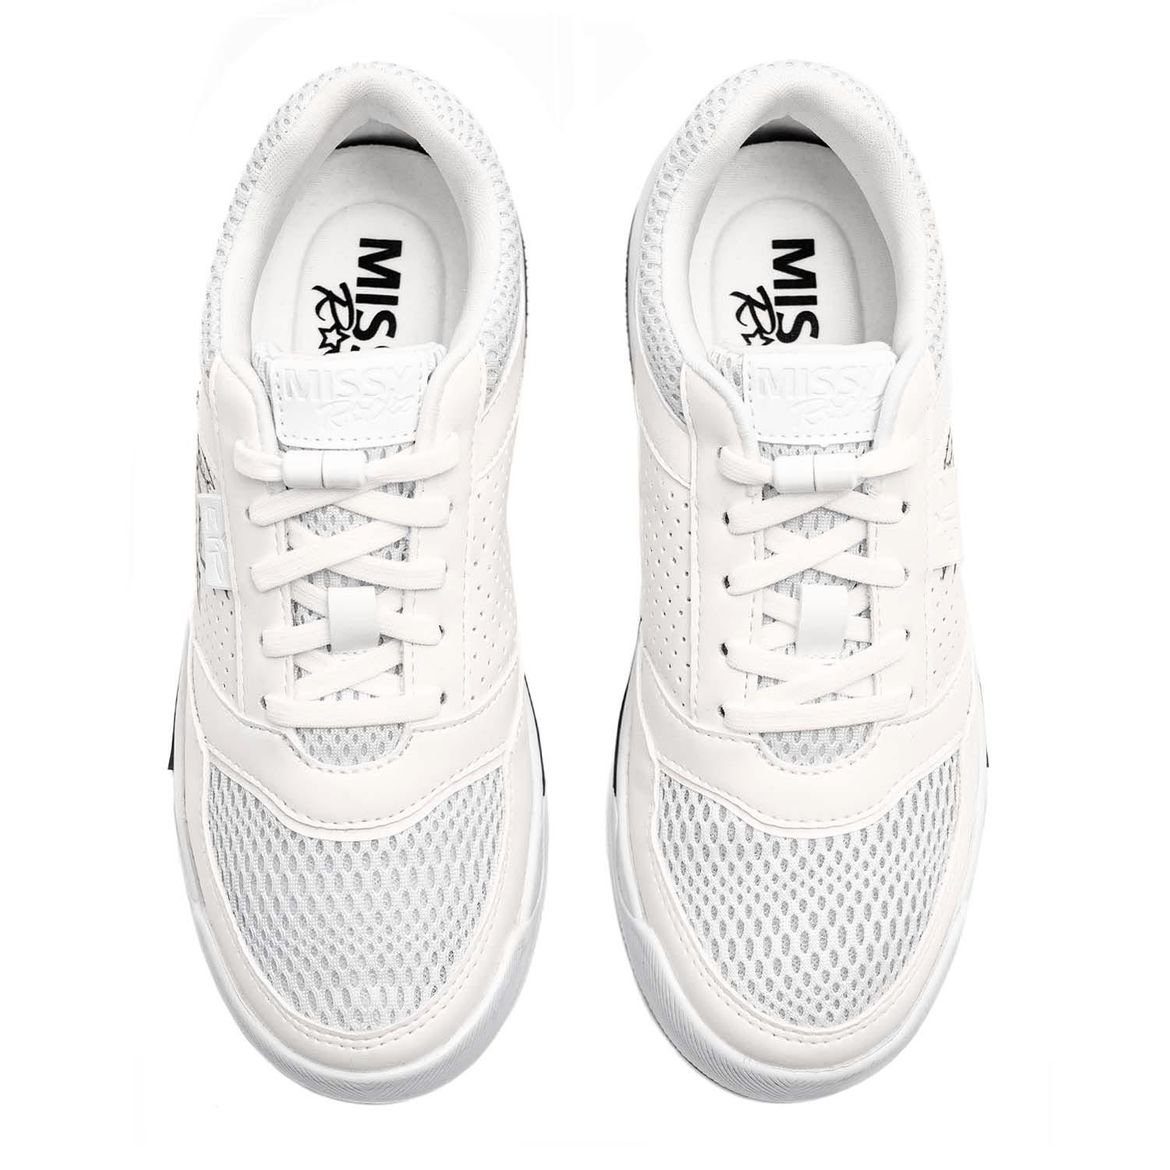 Missy cream IT Sneakerboots EIP SKETCH No. Rockz 1 / white